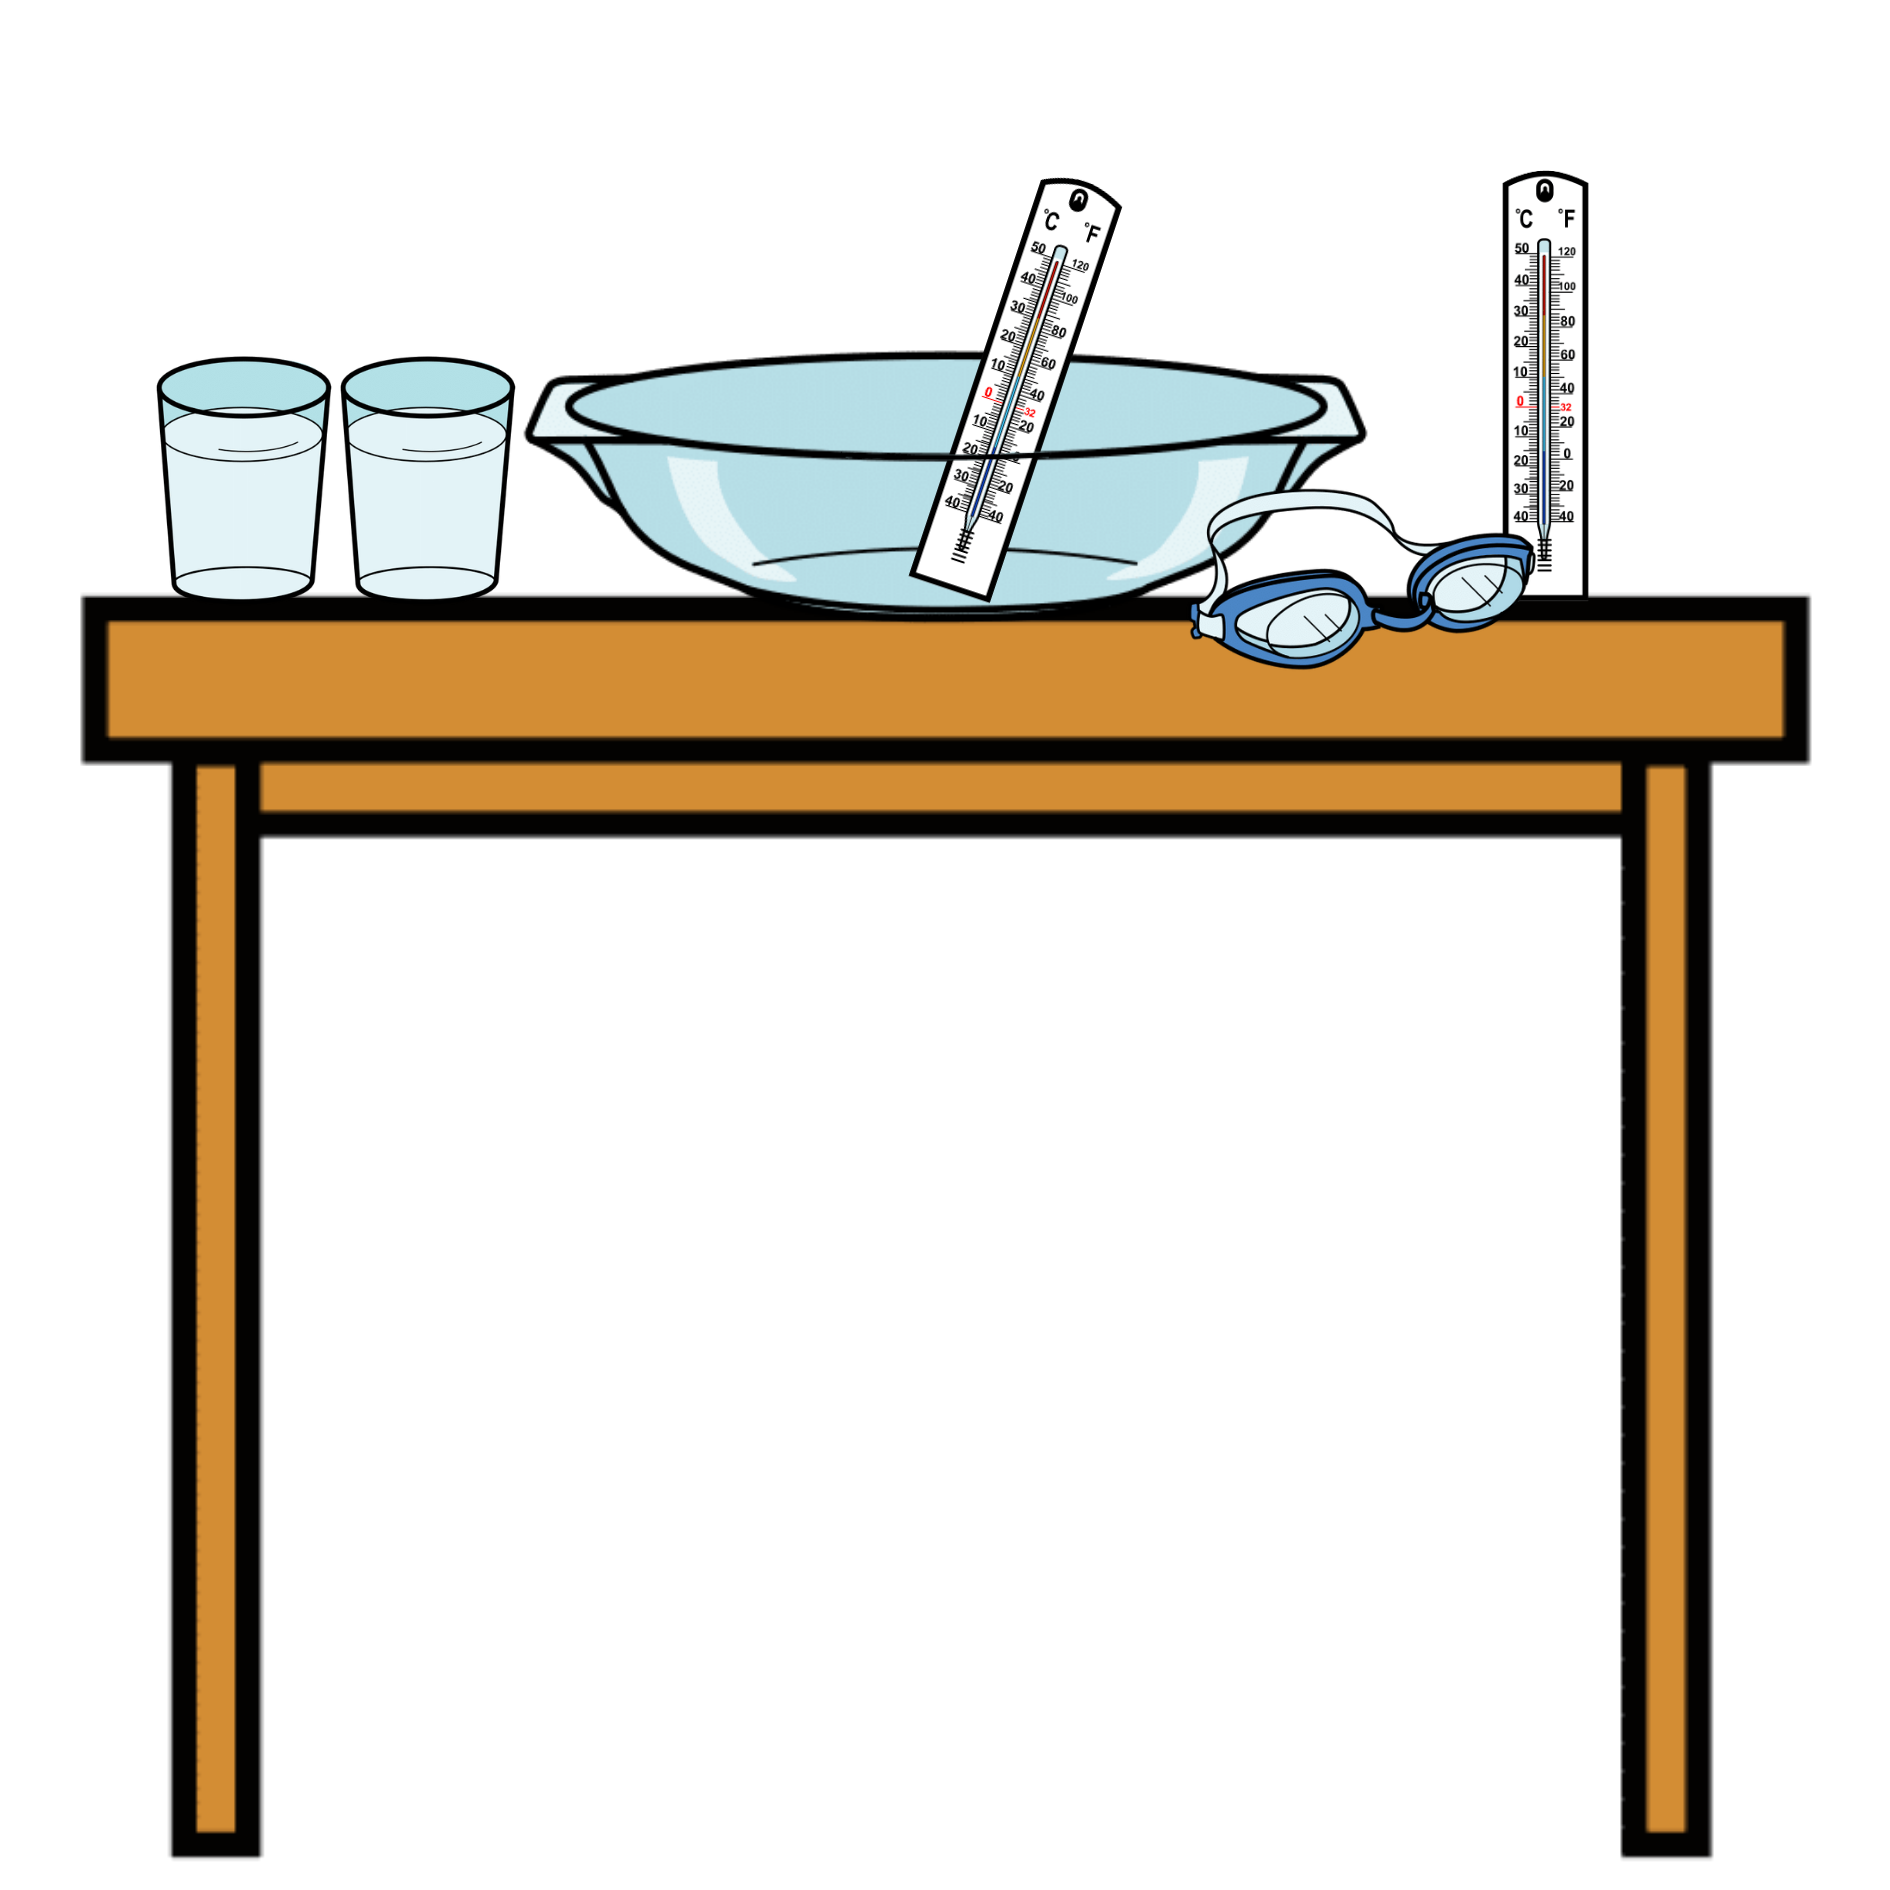 Dibujo de una mesa con los materiales para hacer el experimento: una fuente de cristal, dos termómetros, dos vasos con agua y unas gafas de agua